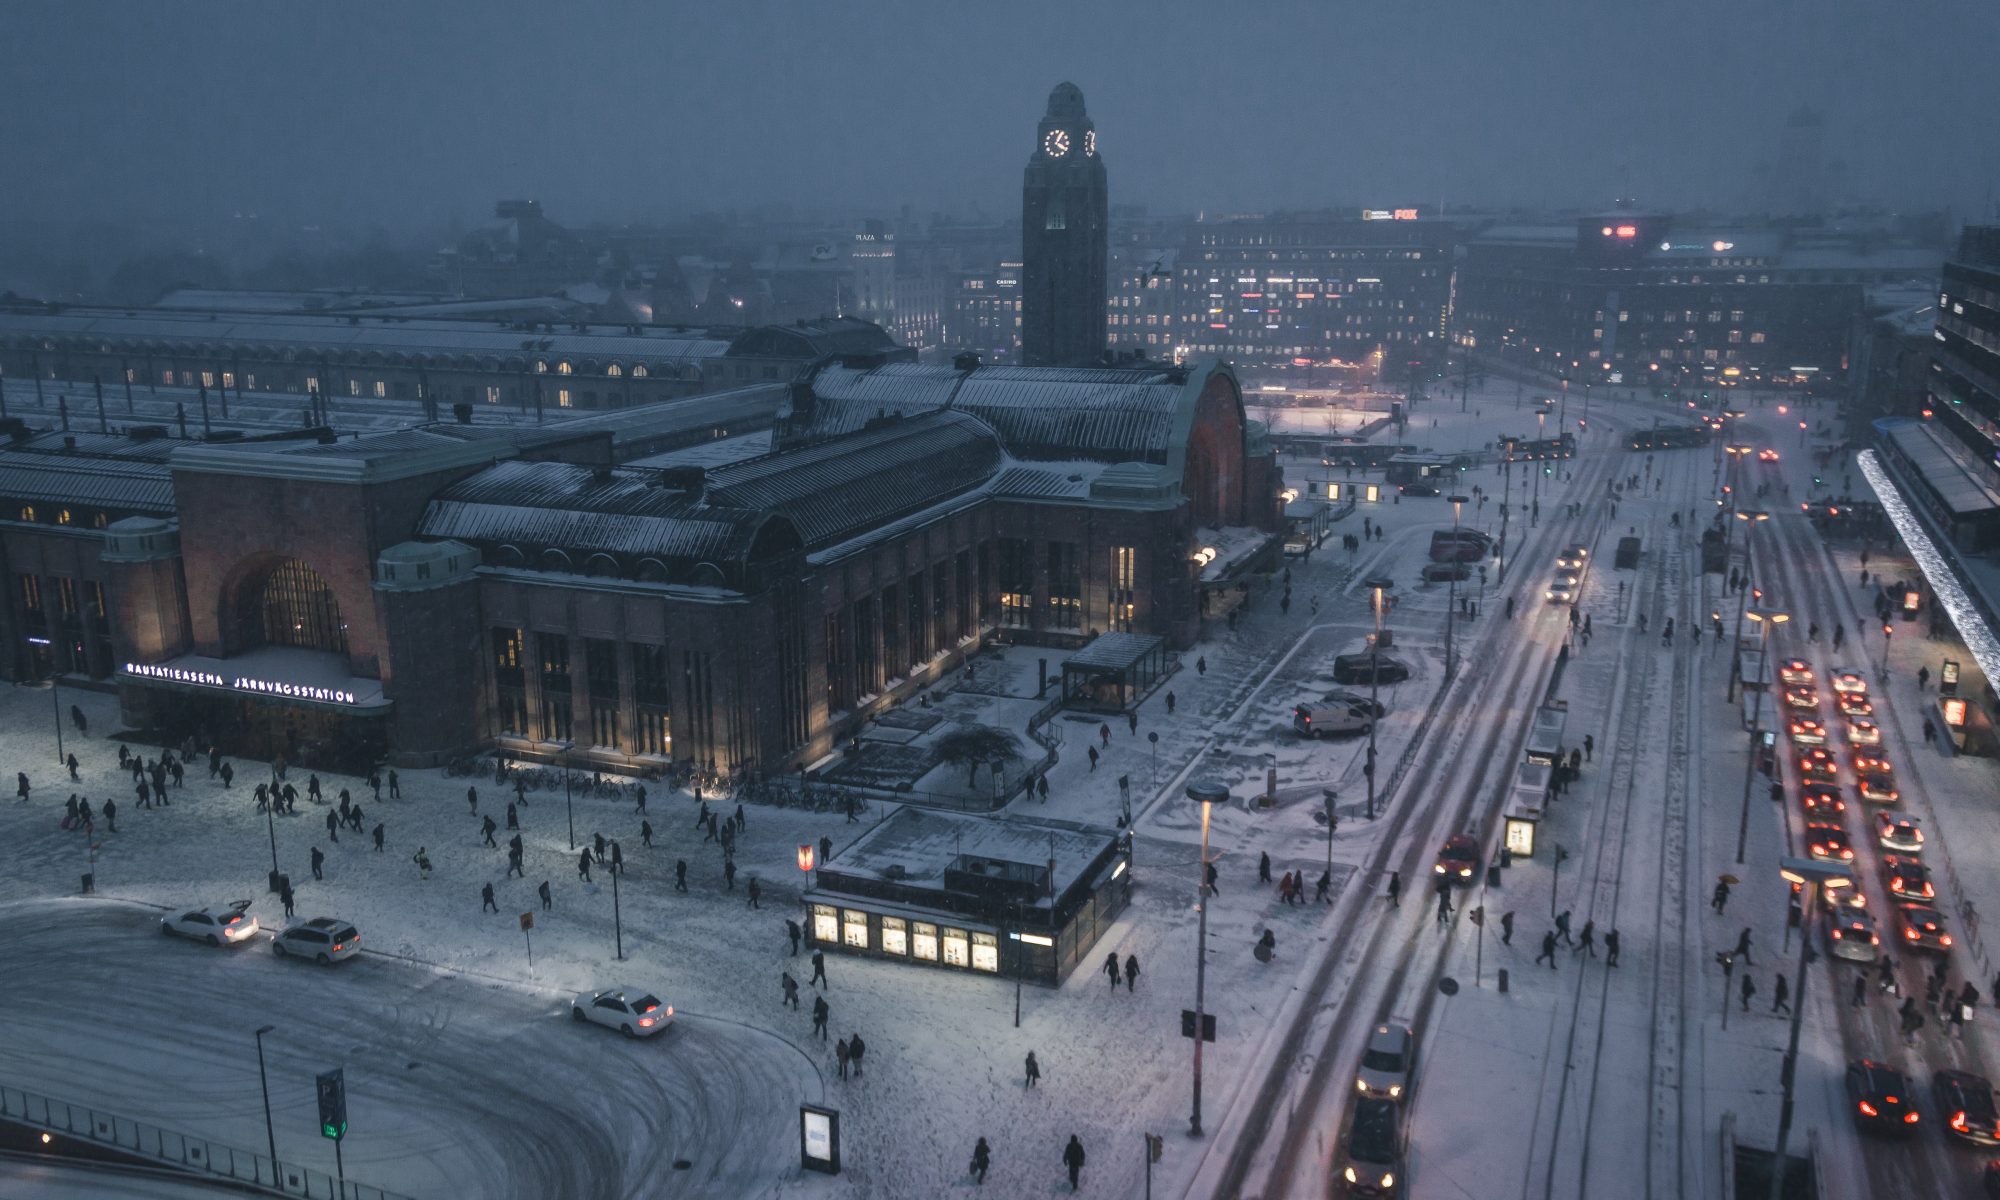 Helsinki in November